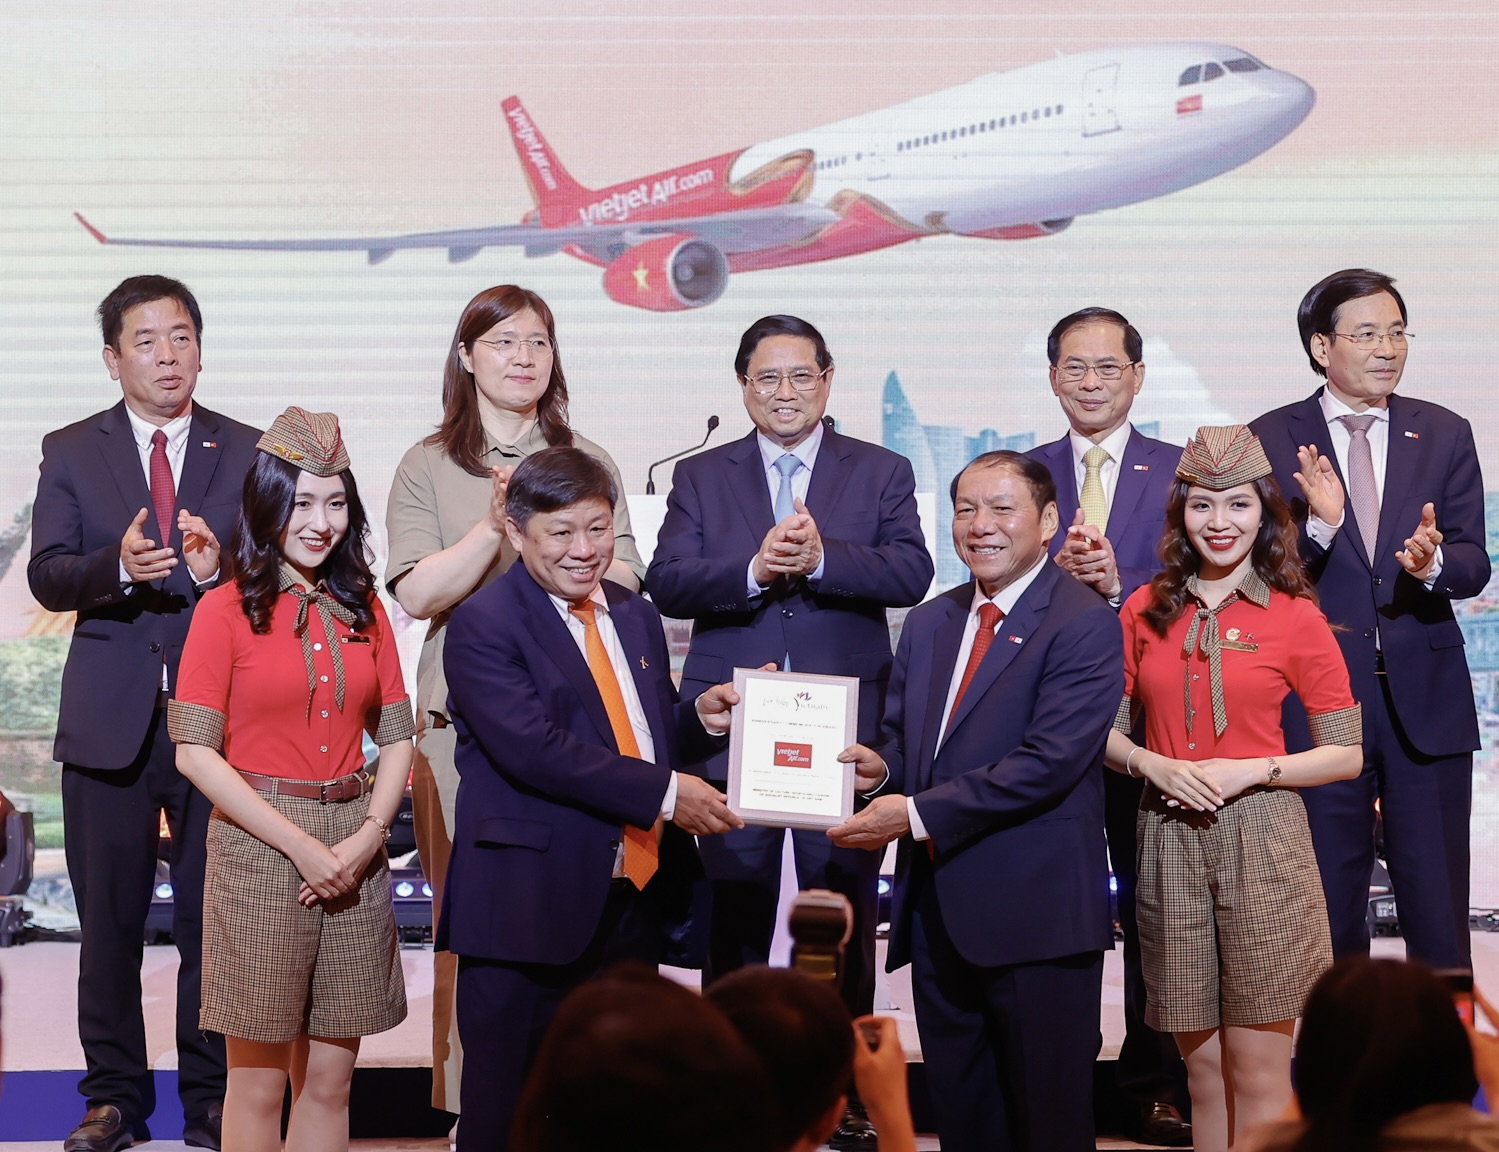 Dưới sự chứng kiến của Thủ tướng Phạm Minh Chính, Bộ trưởng Bộ VHTT&DL Nguyễn Văn Hùng trao tặng Kỷ niệm chương chúc mừng cho hành trình 10 năm kết nối giữa Việt Nam - Hàn Quốc của Vietjet.